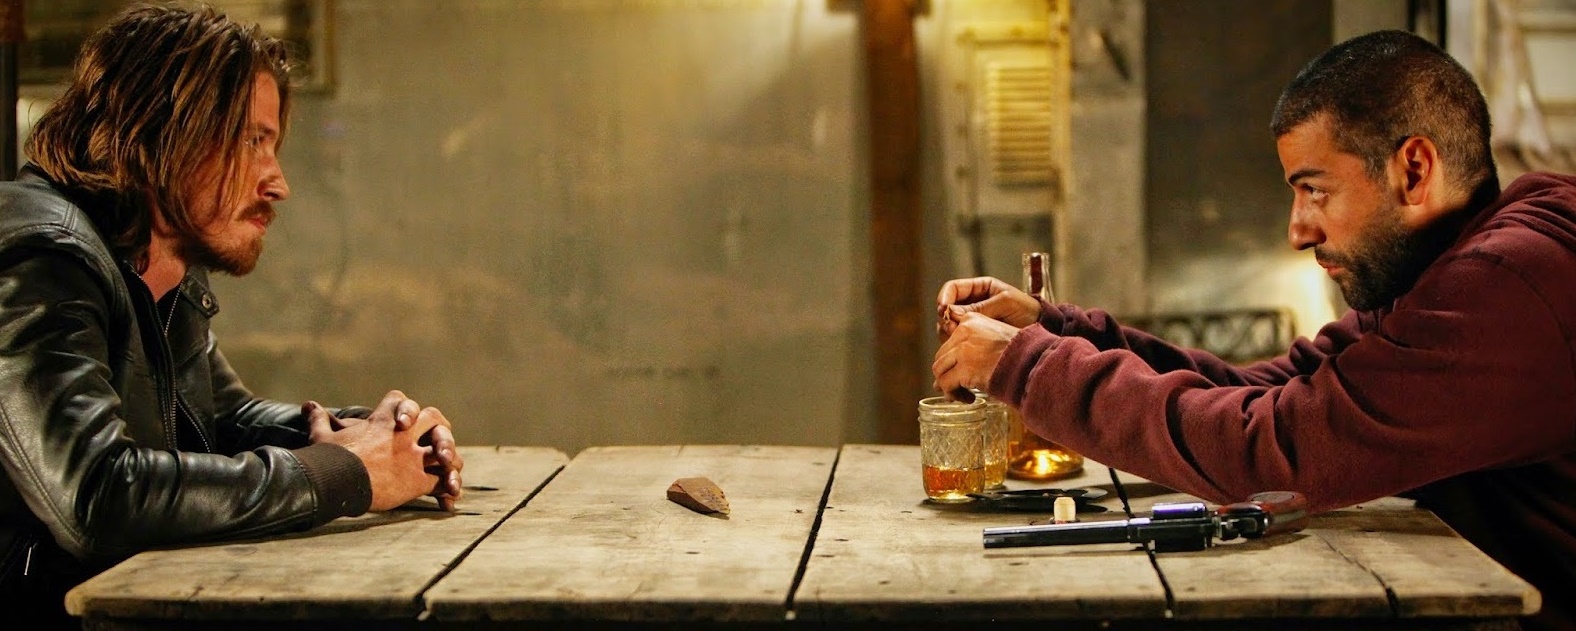 Oscar Isaac i Garrett Hedlund u traileru za "Mojave"